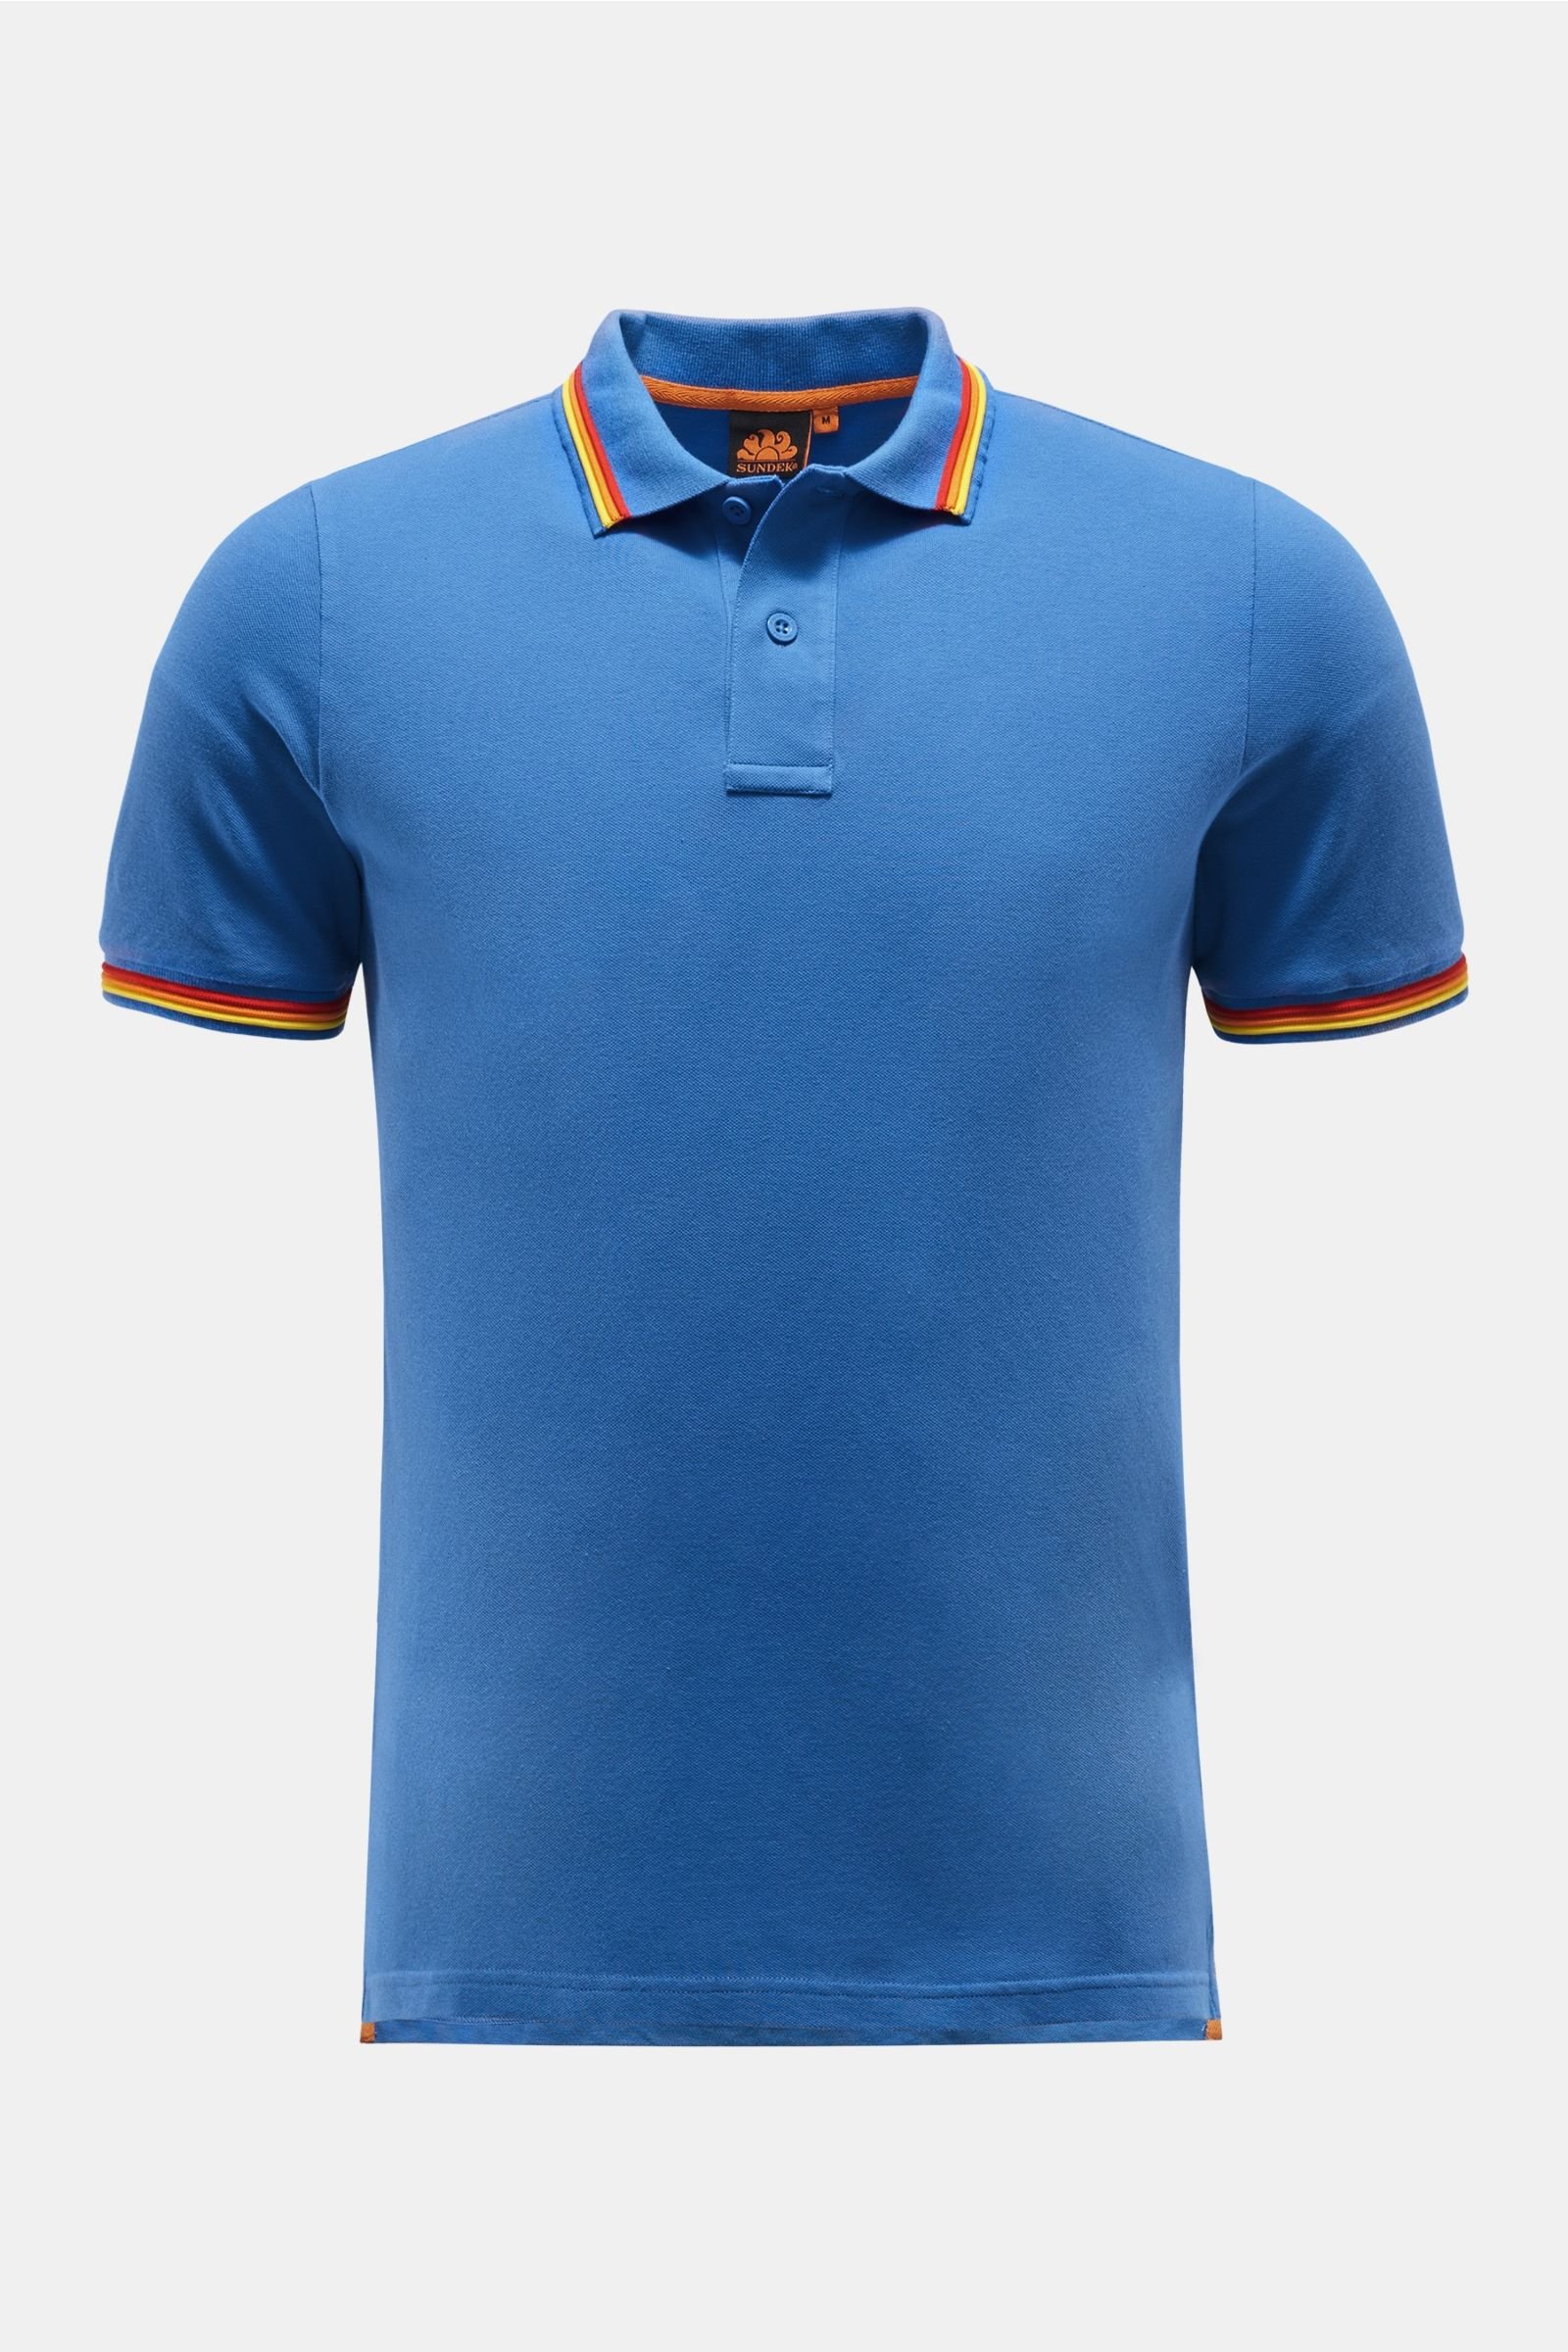 Poloshirt 'Brice' blau